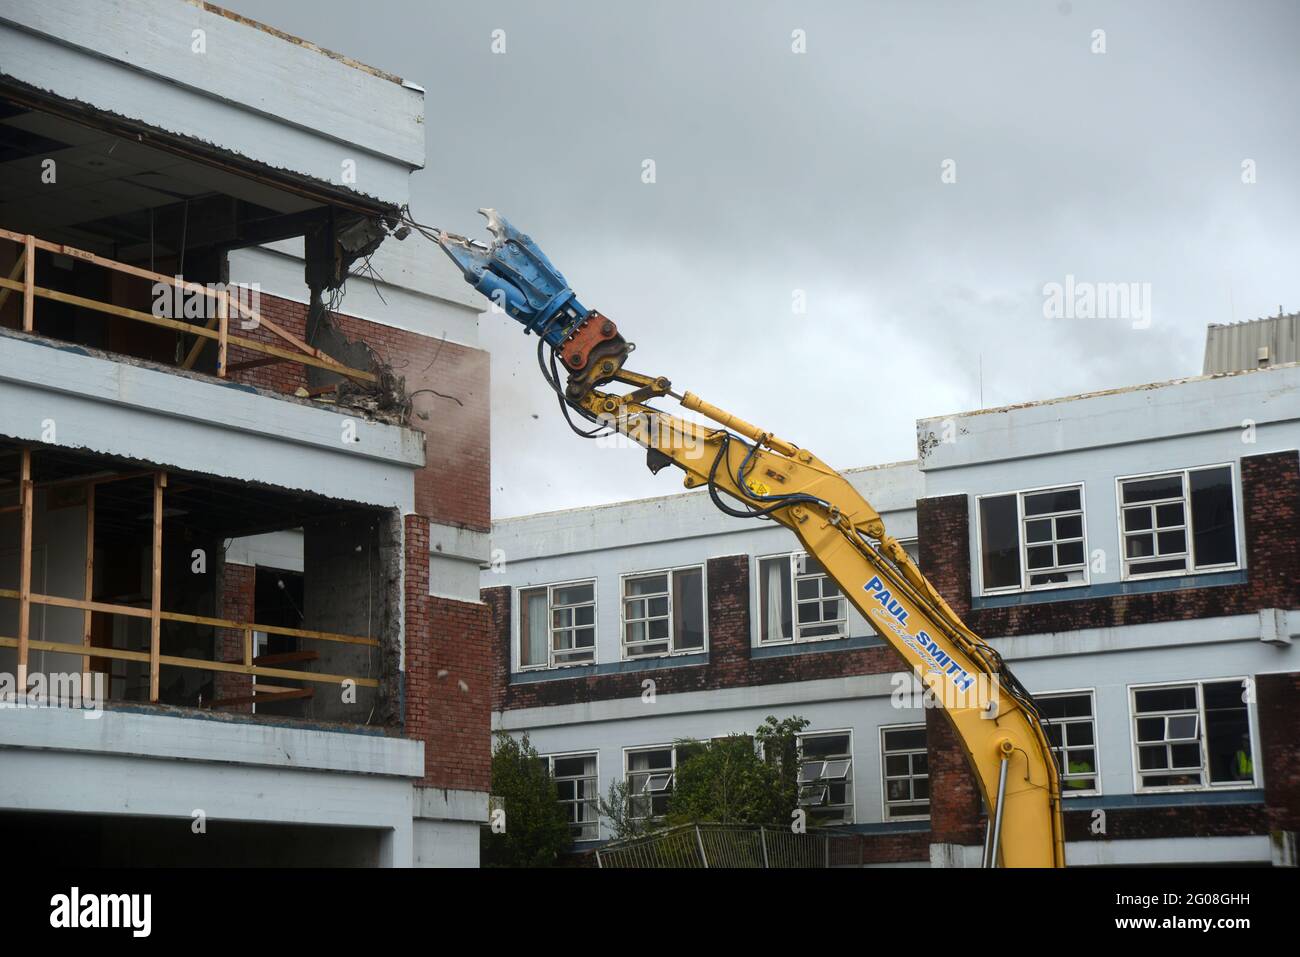 GREYMOUTH, NUOVA ZELANDA, 19 gennaio 2021: Un escavatore utilizza un attacco a artiglio per demolire il vecchio edificio ospedaliero a Greymouth, Nuova Zelanda, gennaio Foto Stock